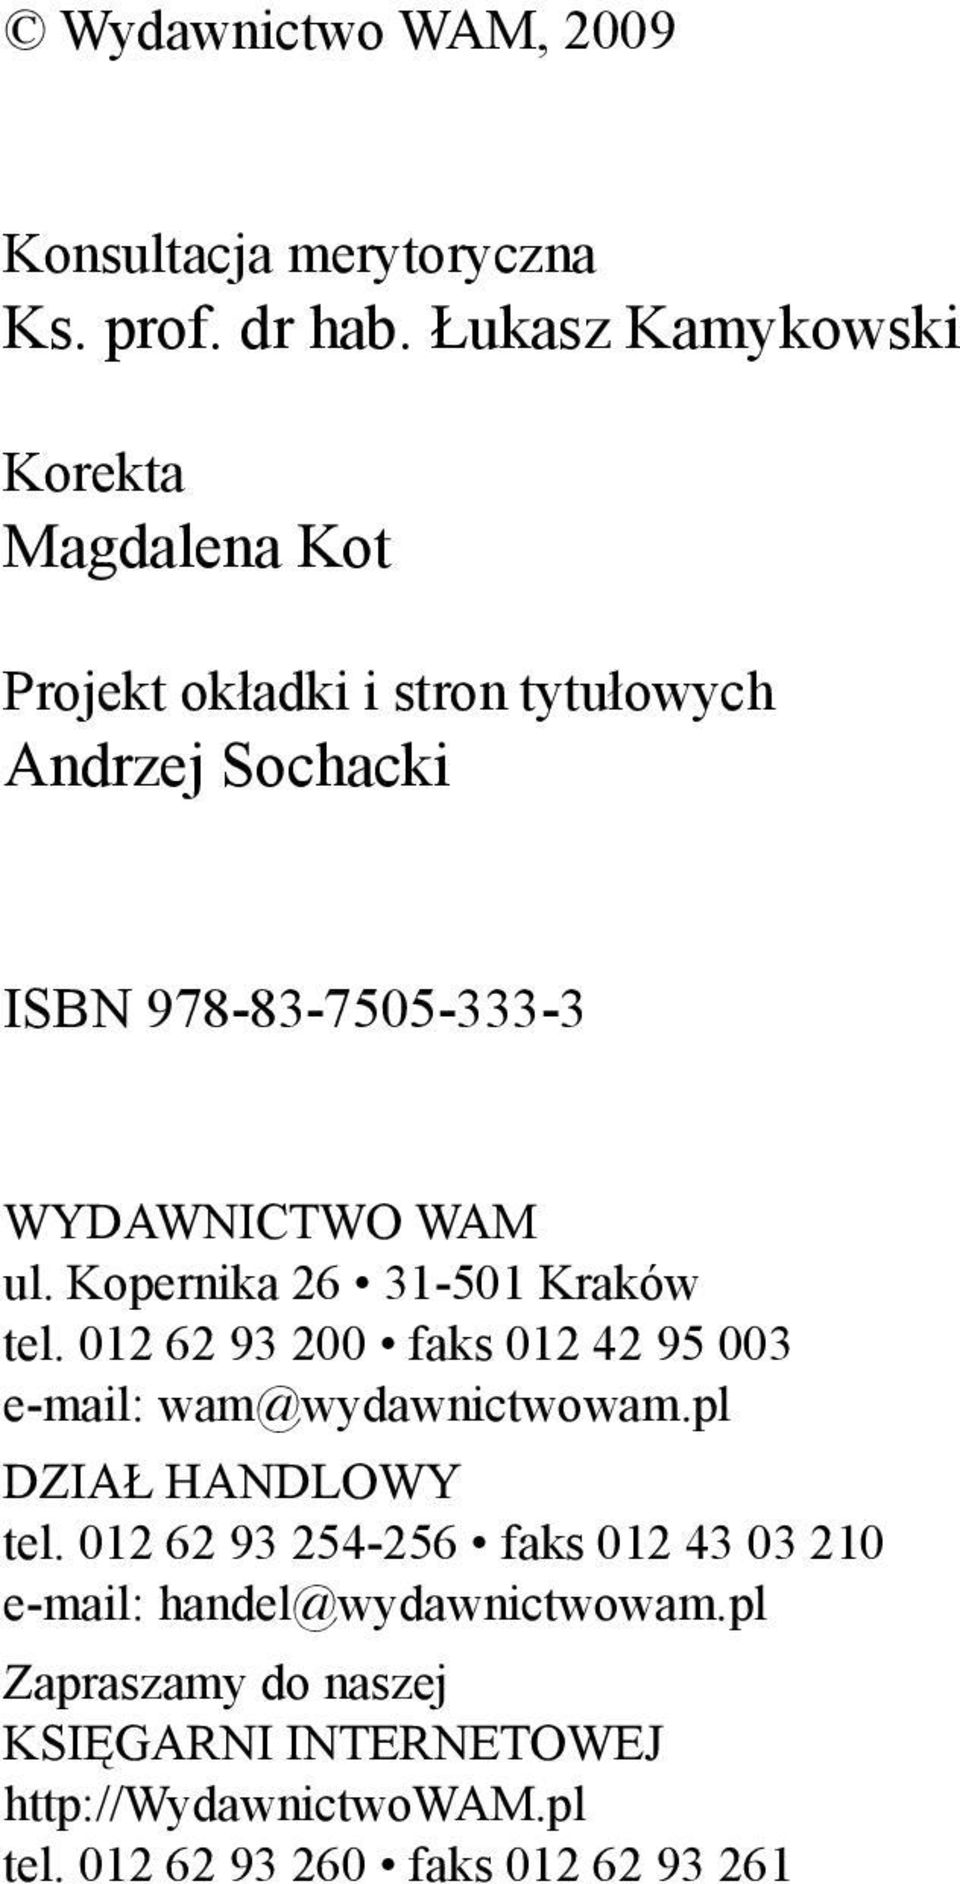 WYDAWNICTWO WAM ul. Kopernika 26 31-501 Kraków tel. 012 62 93 200 faks 012 42 95 003 e-mail: wam@wydawnictwowam.